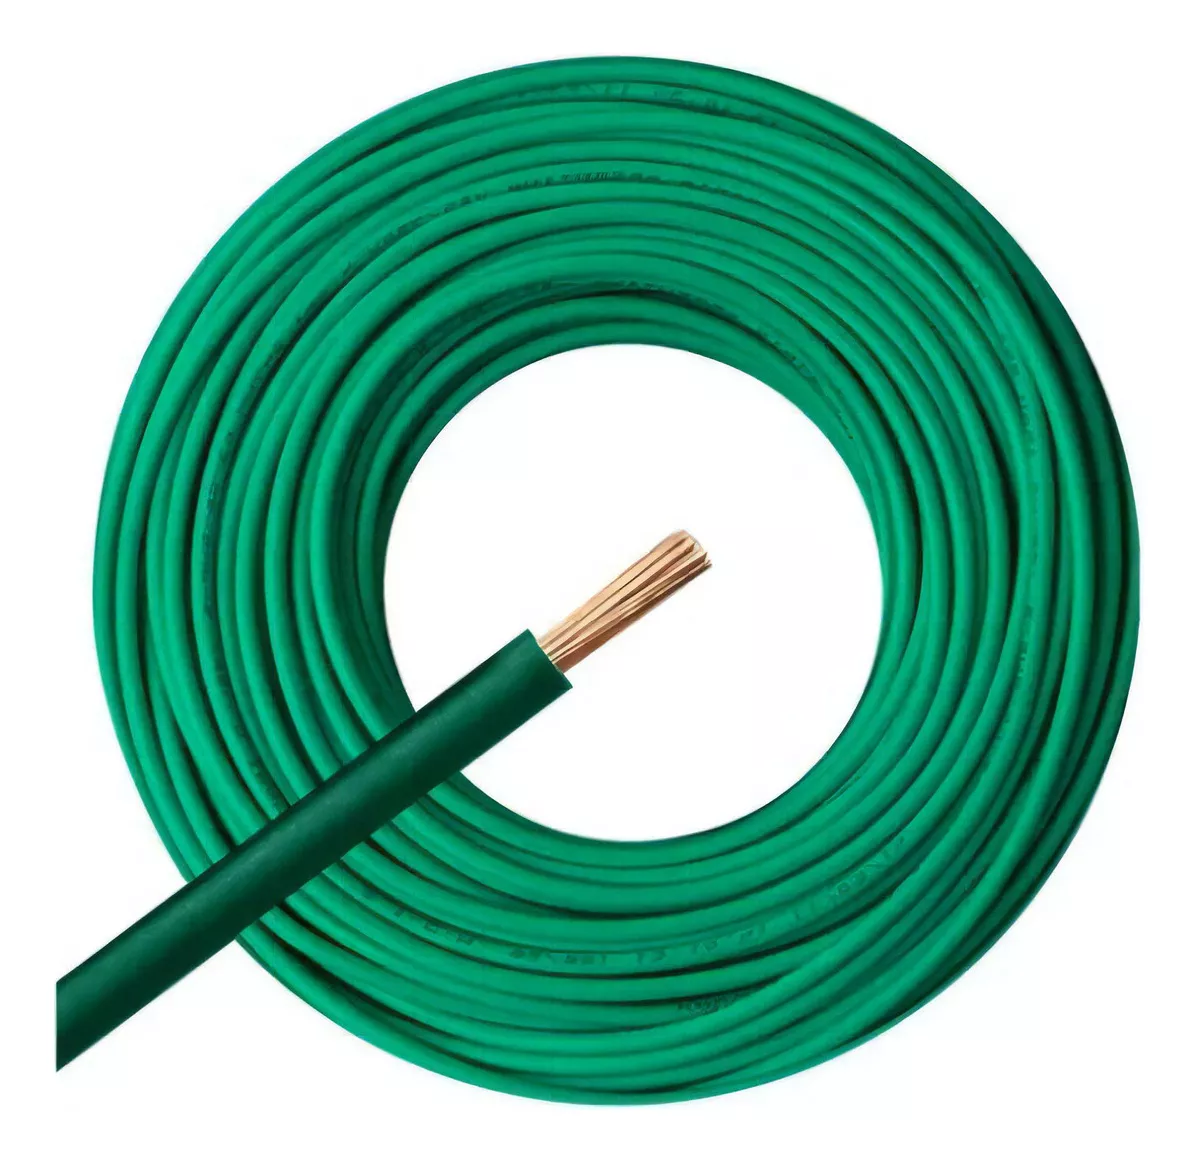 Segunda imagen para búsqueda de rollo cable 1.5 mm electricidad cables unipolares